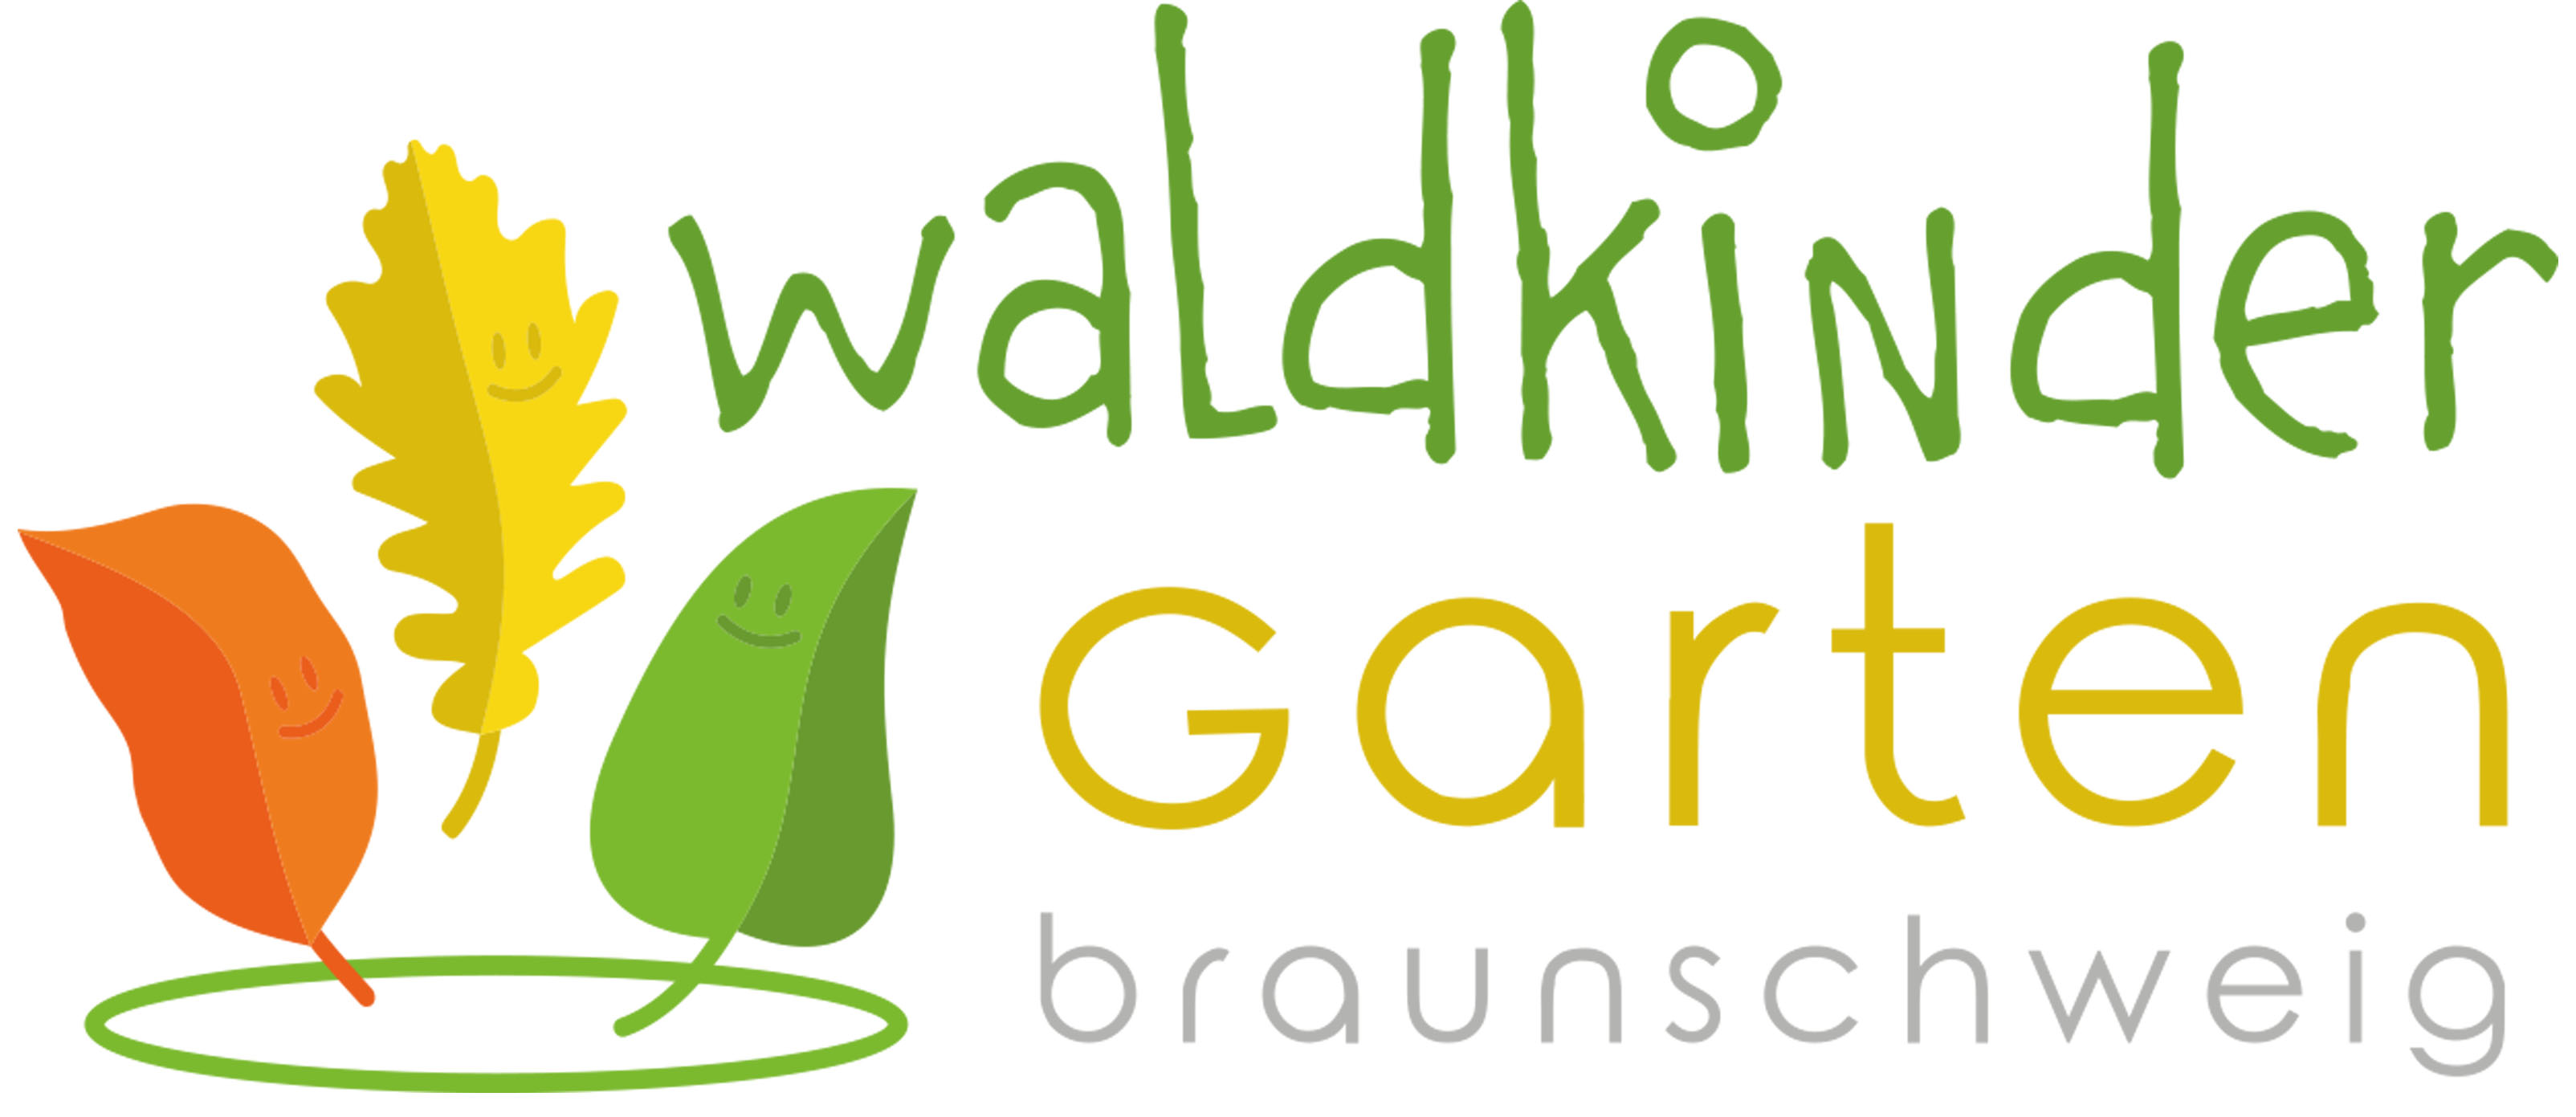 logo waldkindergarten